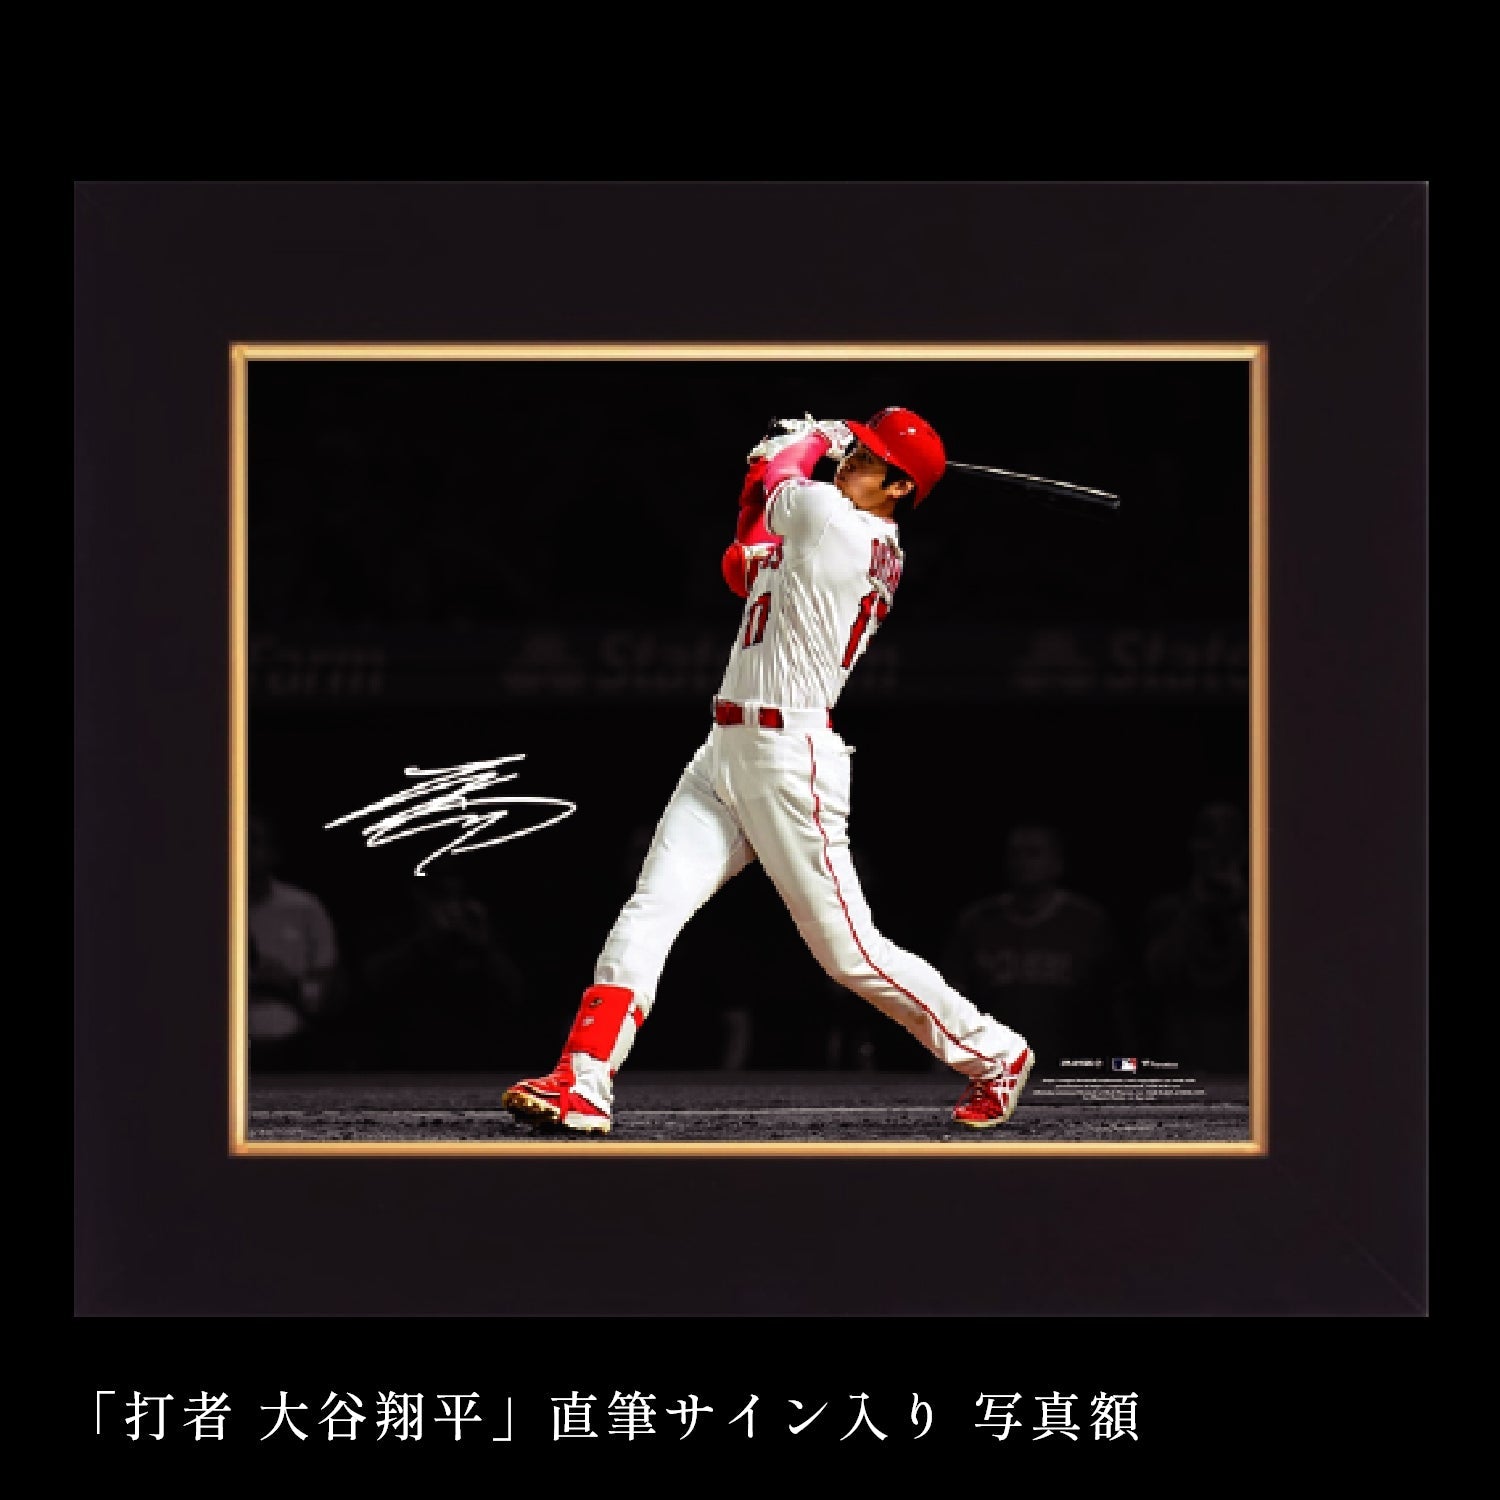 【完売】MLB承認「打者 大谷翔平」直筆サイン入り 写真額 - 公式通販サイト「アニメコレクション/Anime Collection」